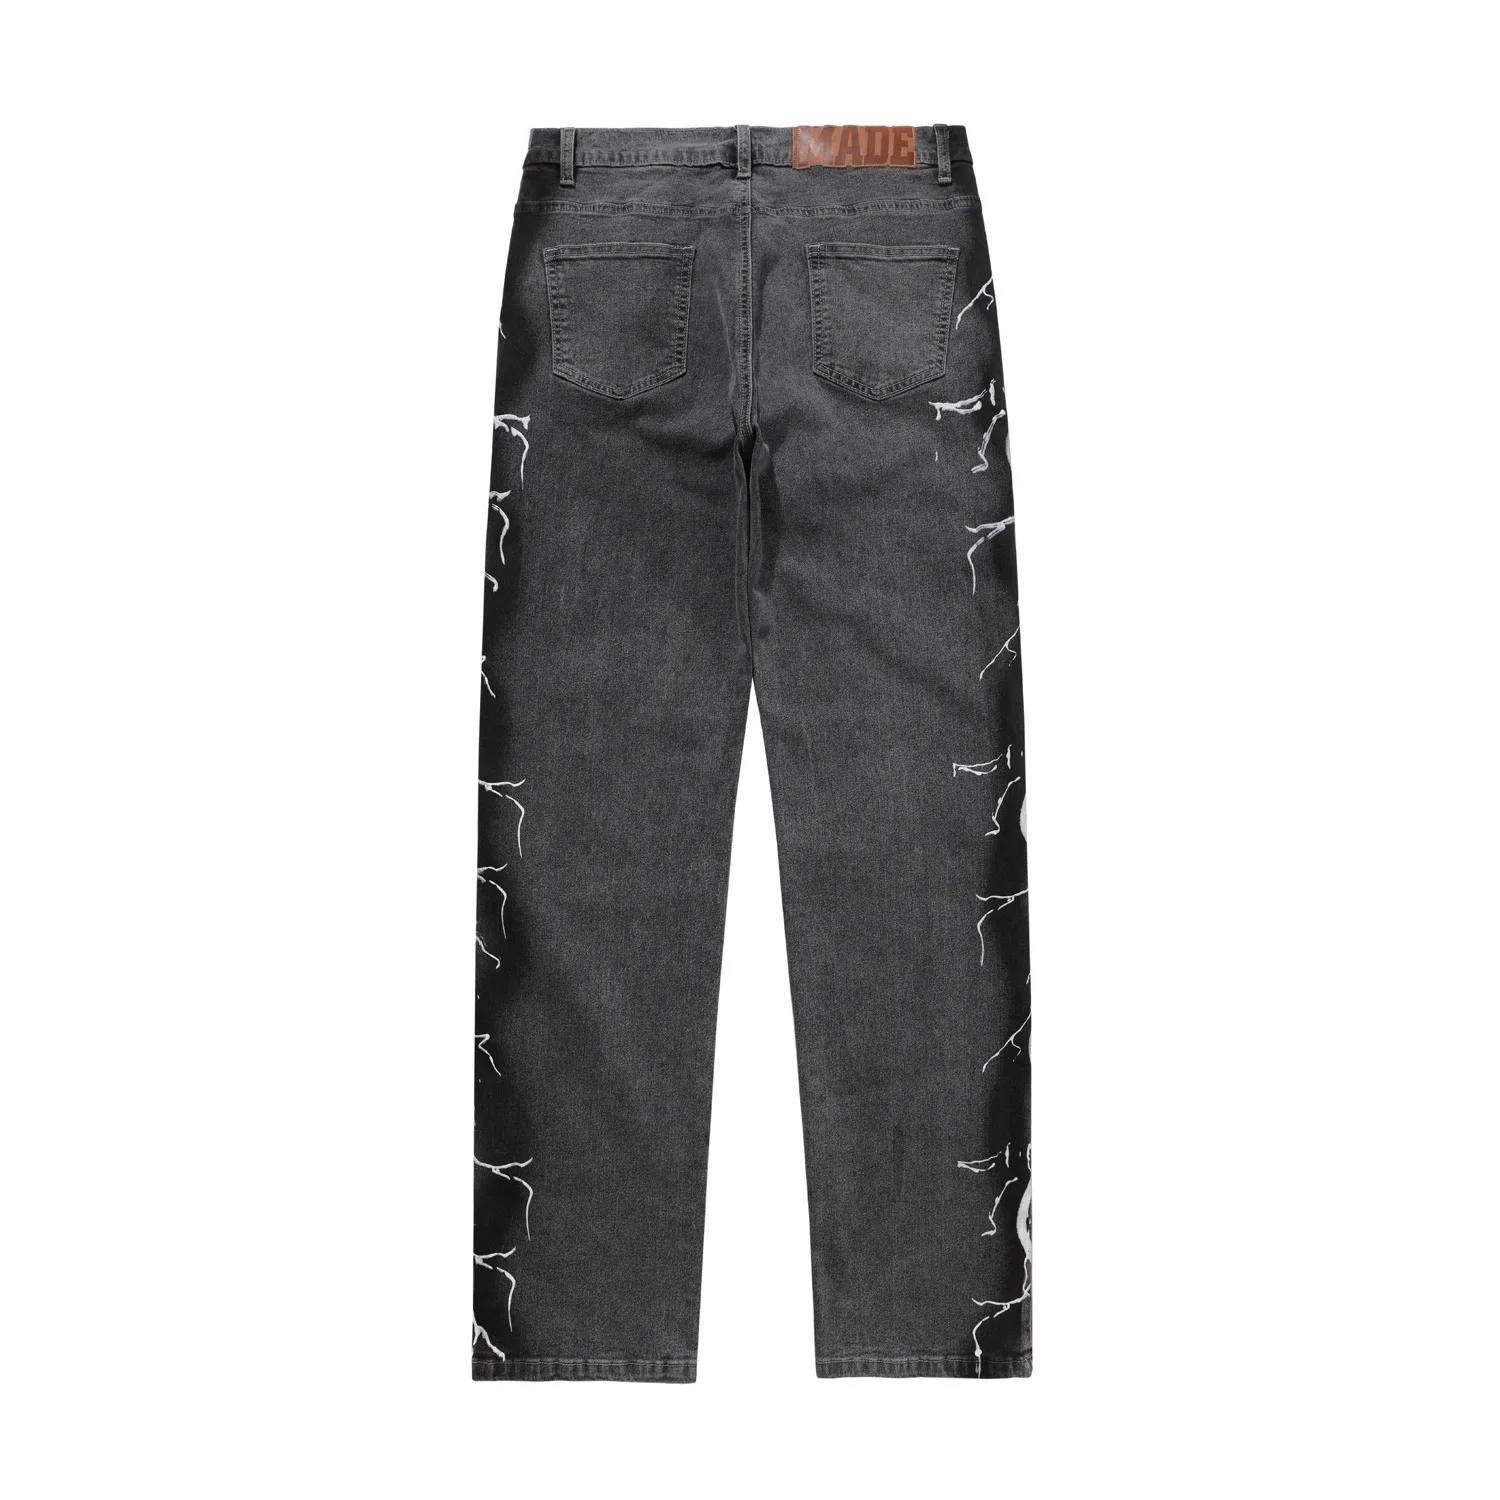 

MADE EXTREME Side pattern distressed jeans men designer jeans for men HIP HOP biker jeans men fashion cargo jeans Z79